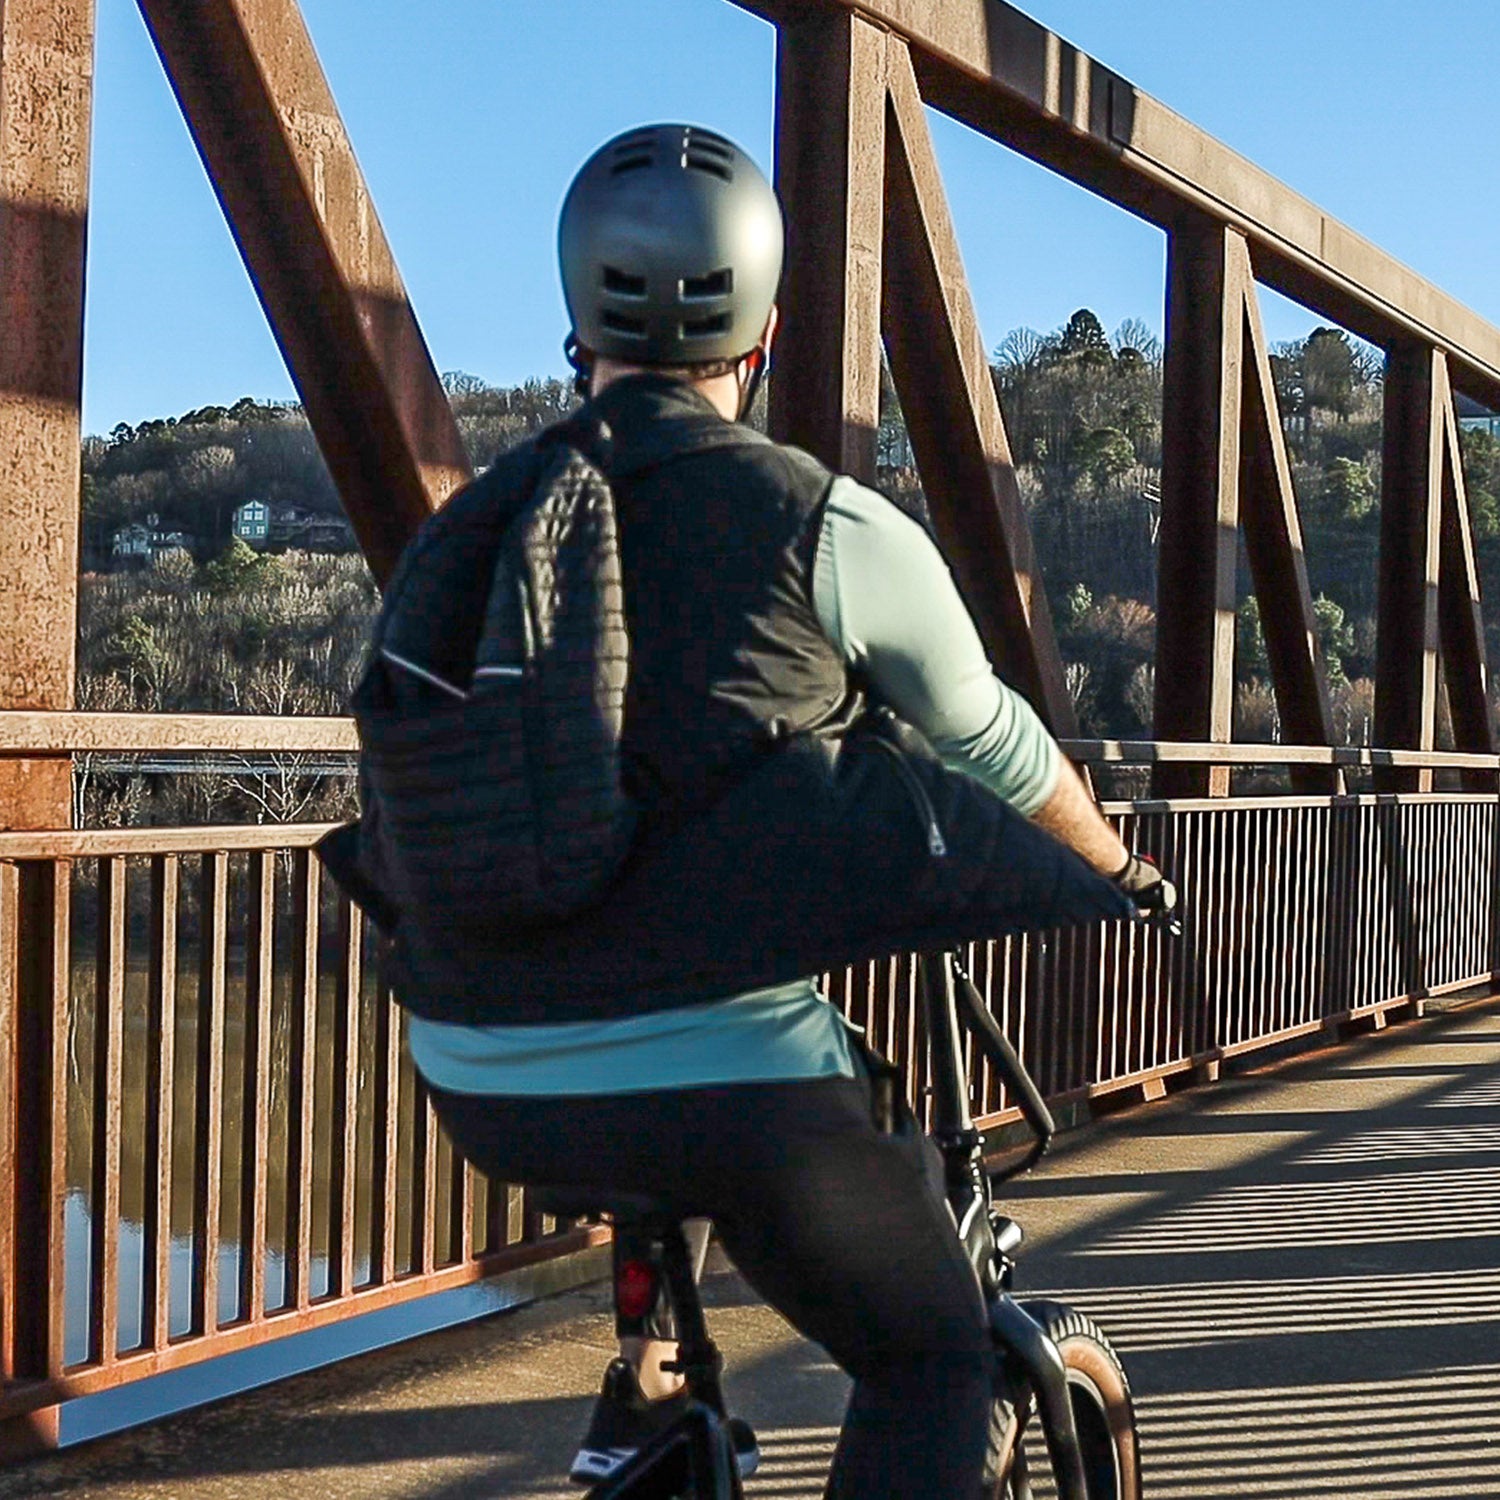 Person riding the Emerald ebike on a bridge.